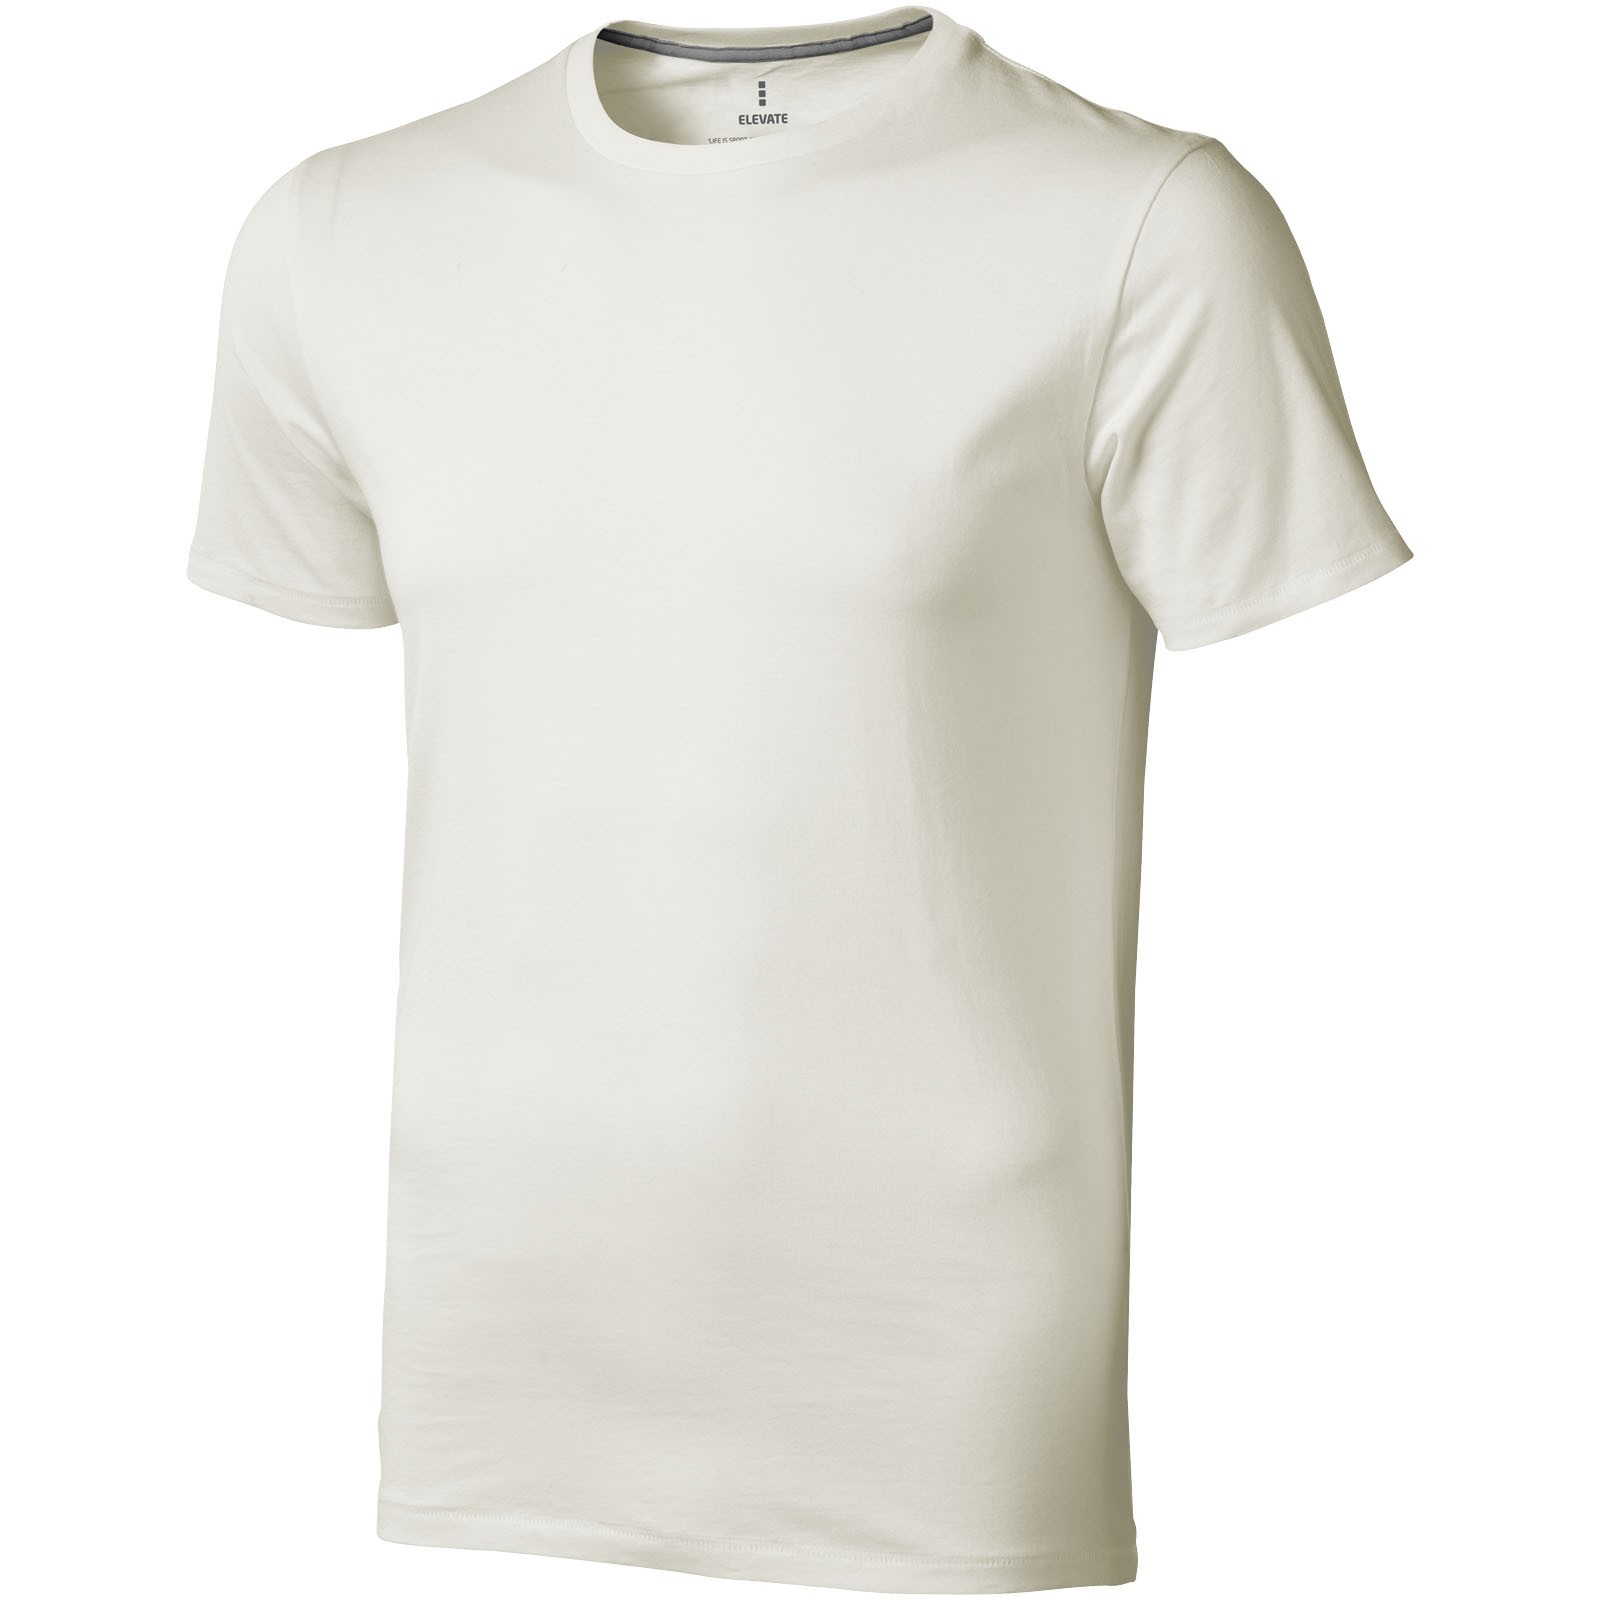 Camiseta de manga corta para hombre "Nanaimo" - Gris Claro / XL